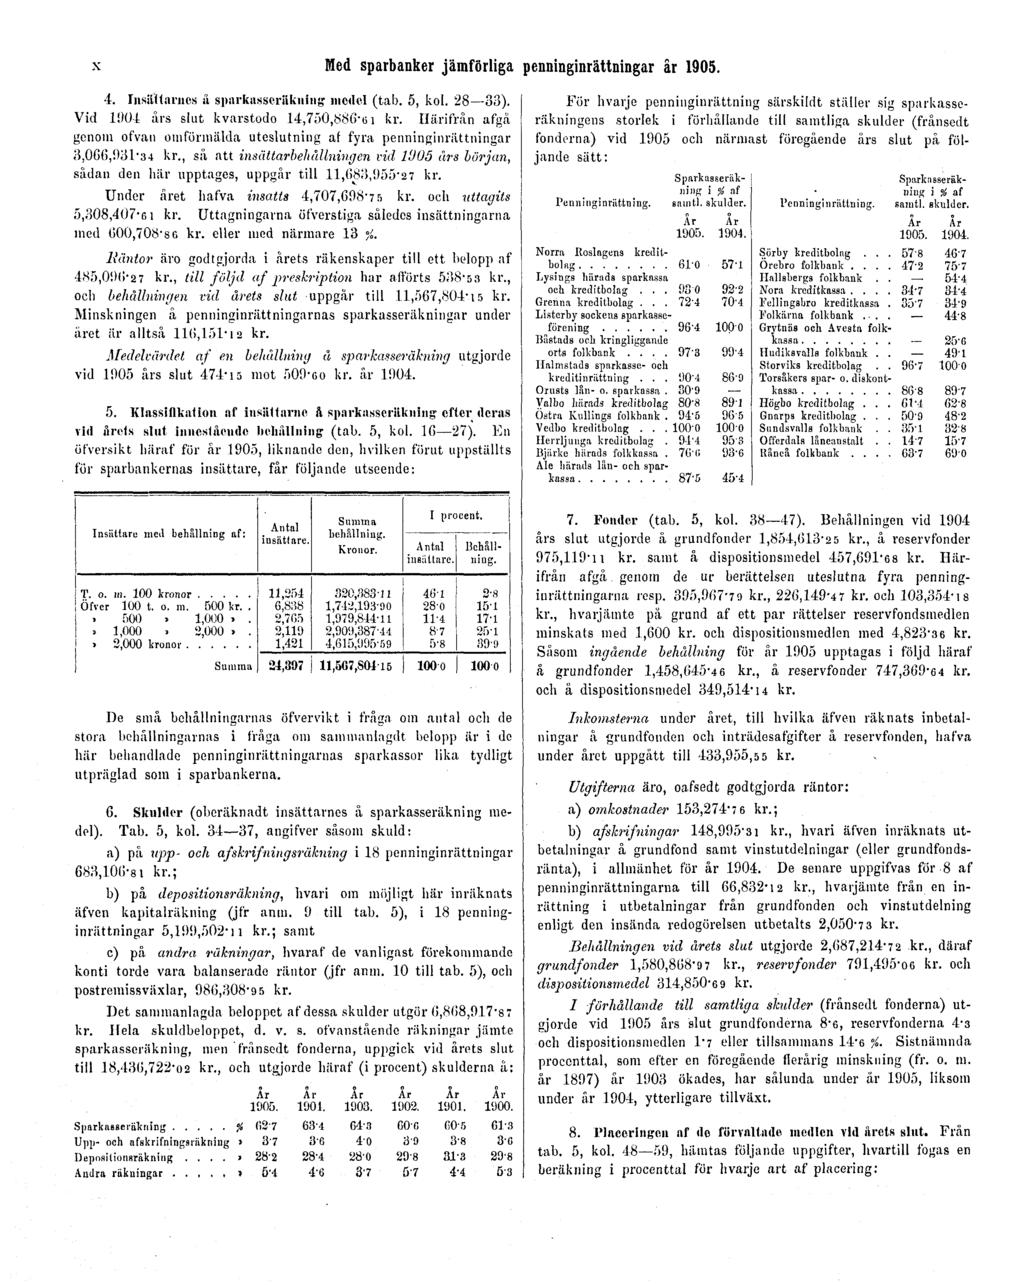 X Med sparbanker jämförliga penninginrättningar år 1905. 4. Insältariies å sparkasscräkning model (tab. 5, kol. 28 33). Vid 1904 års slut kvarstodo 14,750,886-61 kr.